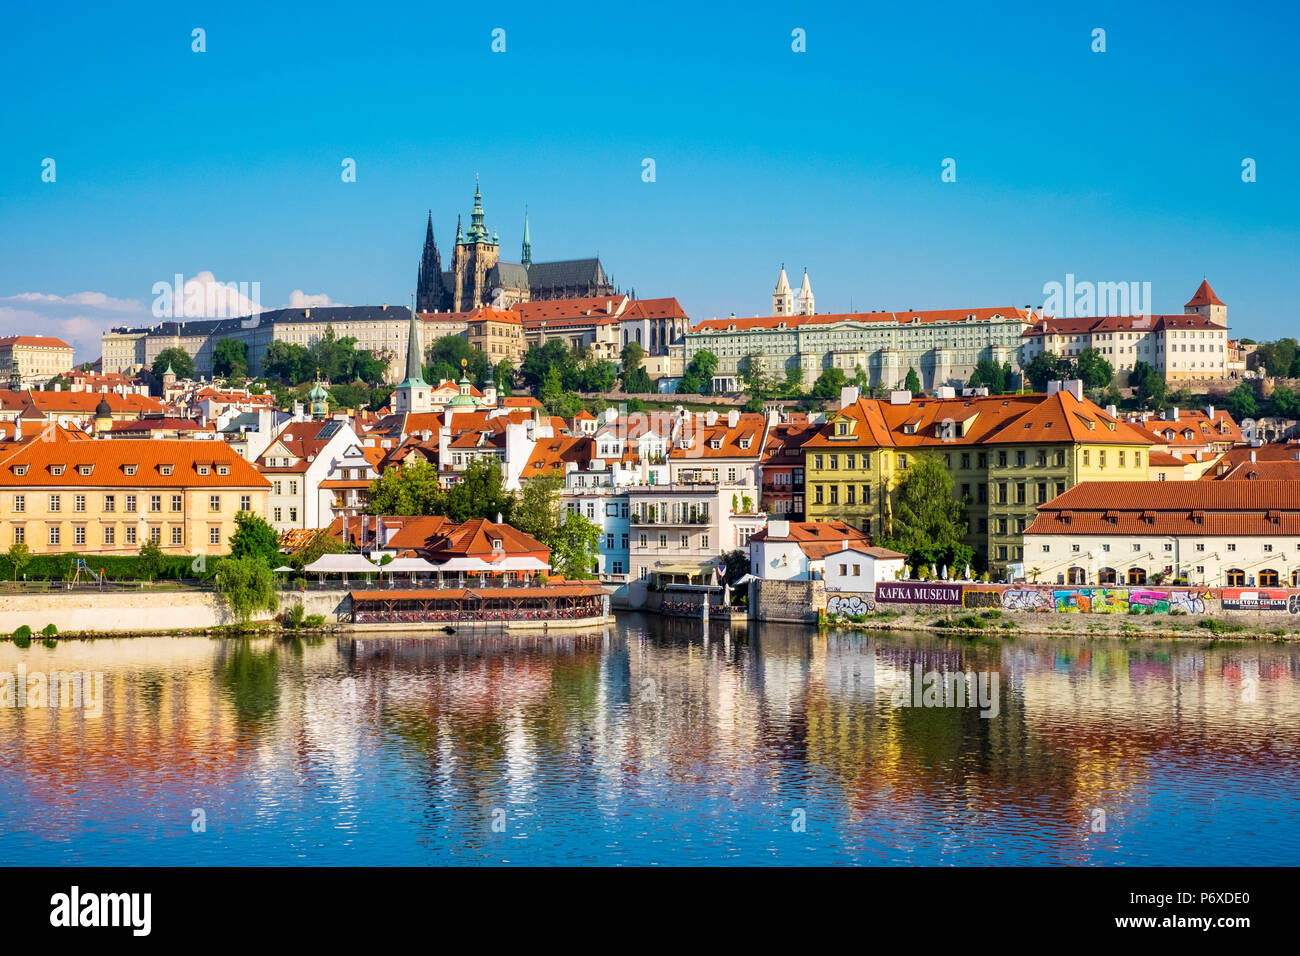 Tschechische Republik, Prag. Blick auf die Prager Burg, Prazsky hrad an der Moldau, und Gebäude in der Mala Strana. Stockfoto